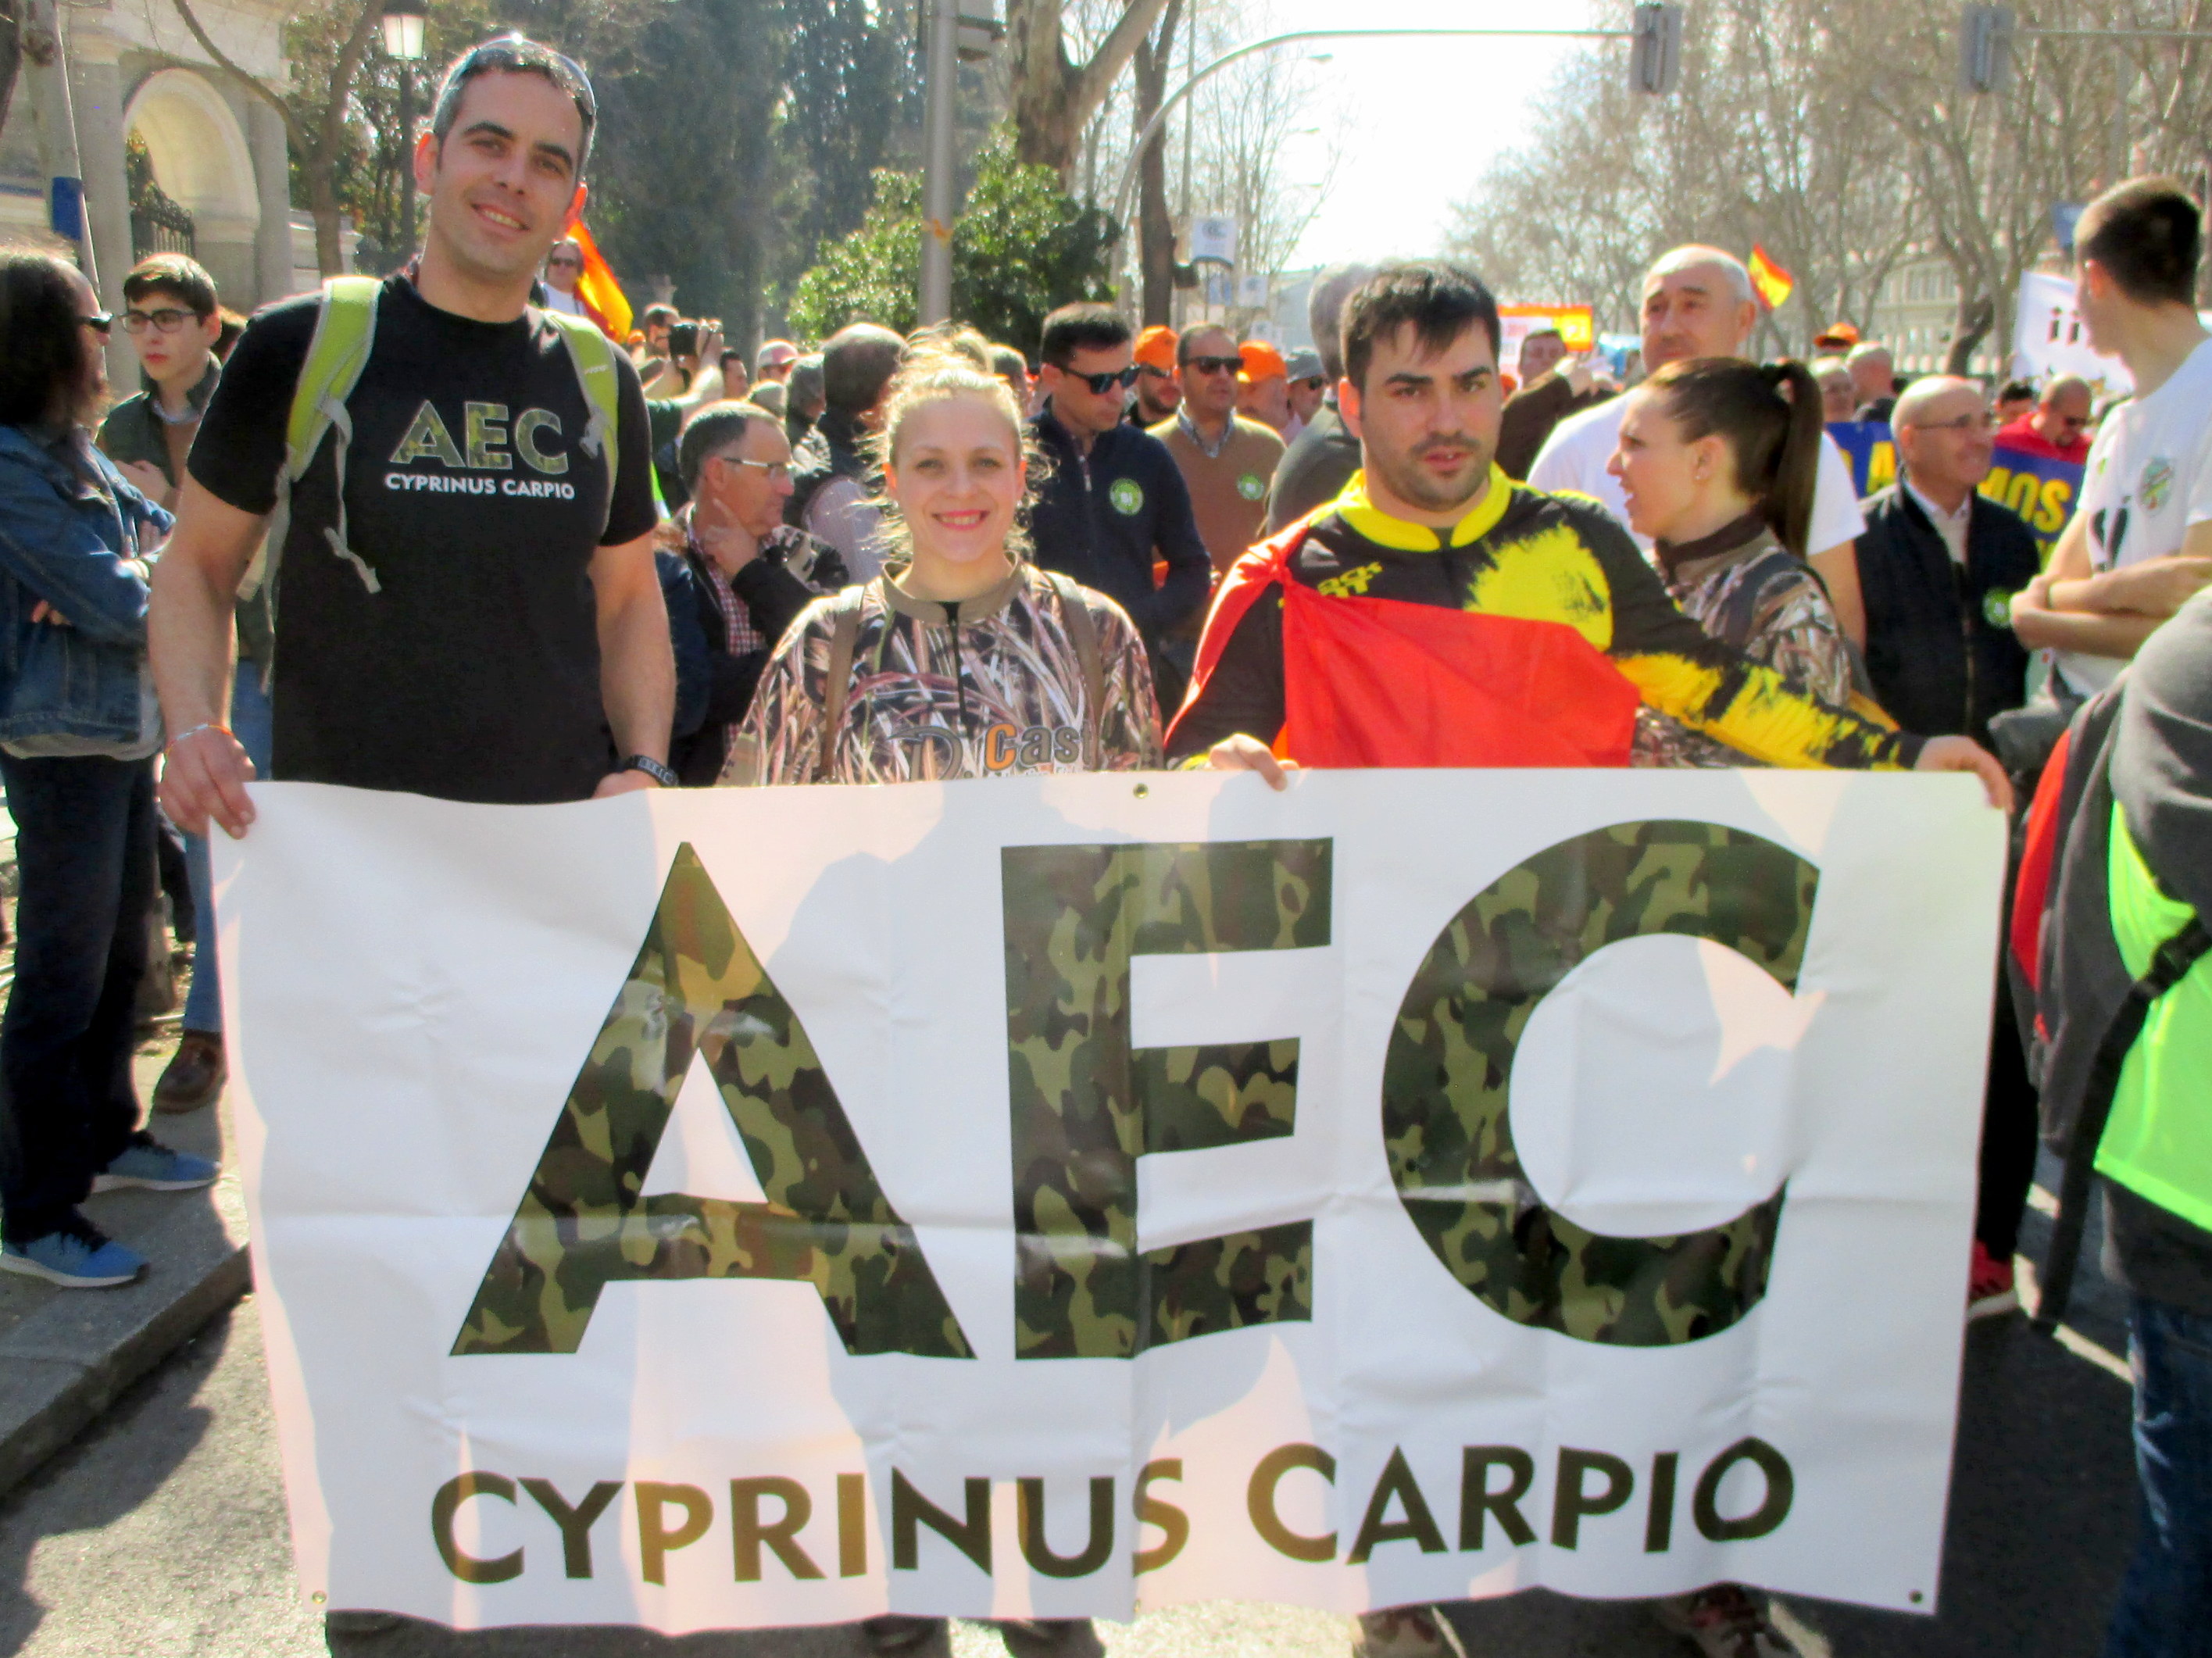 Asociación Española de la Carpa Cyprinus Carpio